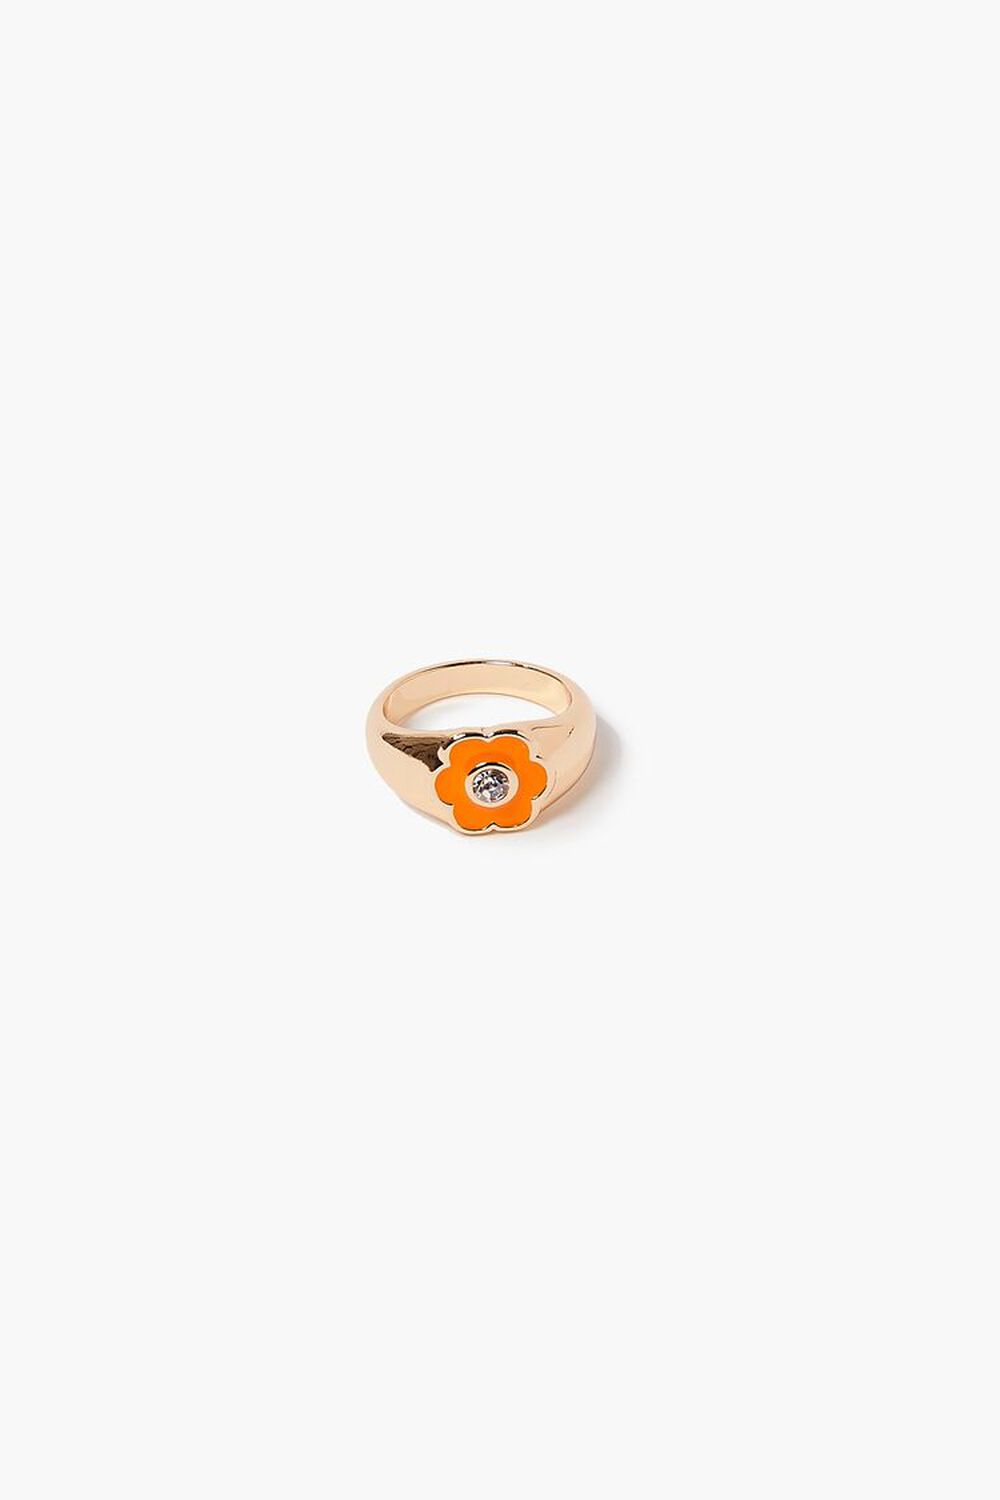 ORANGE/GOLD Rhinestone Floral Cocktail Ring, image 1